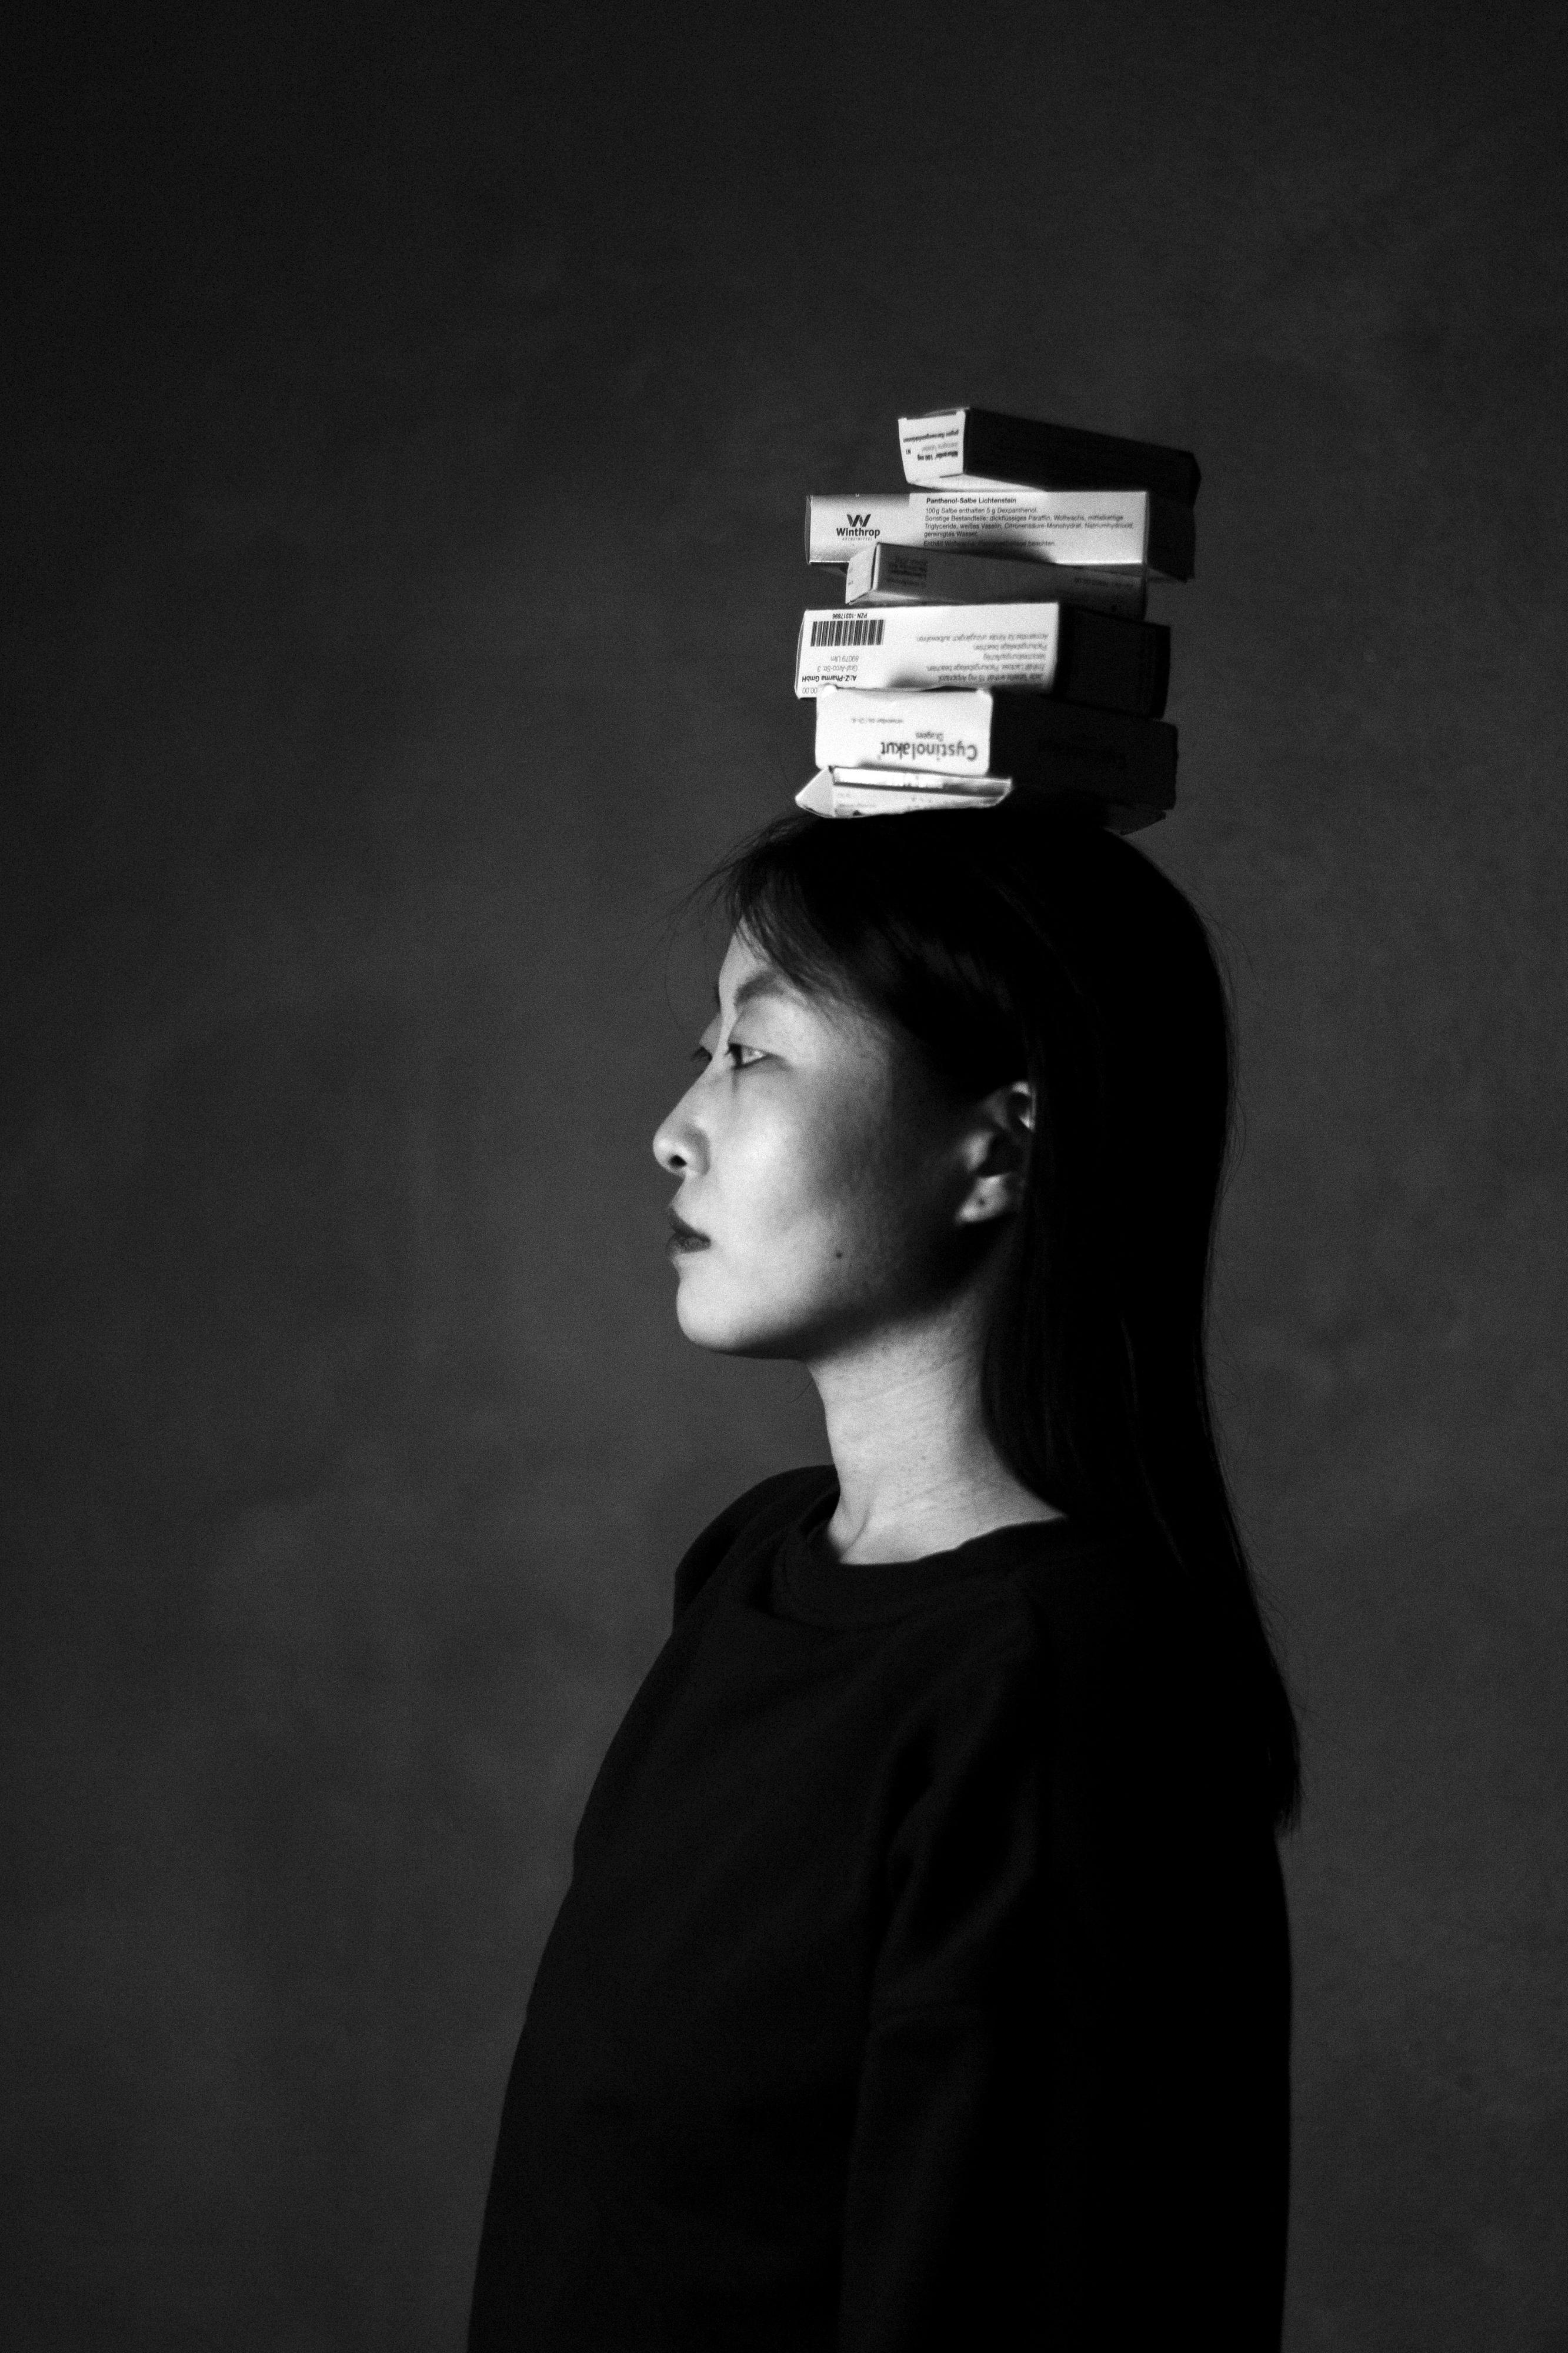 Porträt einer Frau im Profil - sie trägt Medikamentenschachteln auf den Kopf.